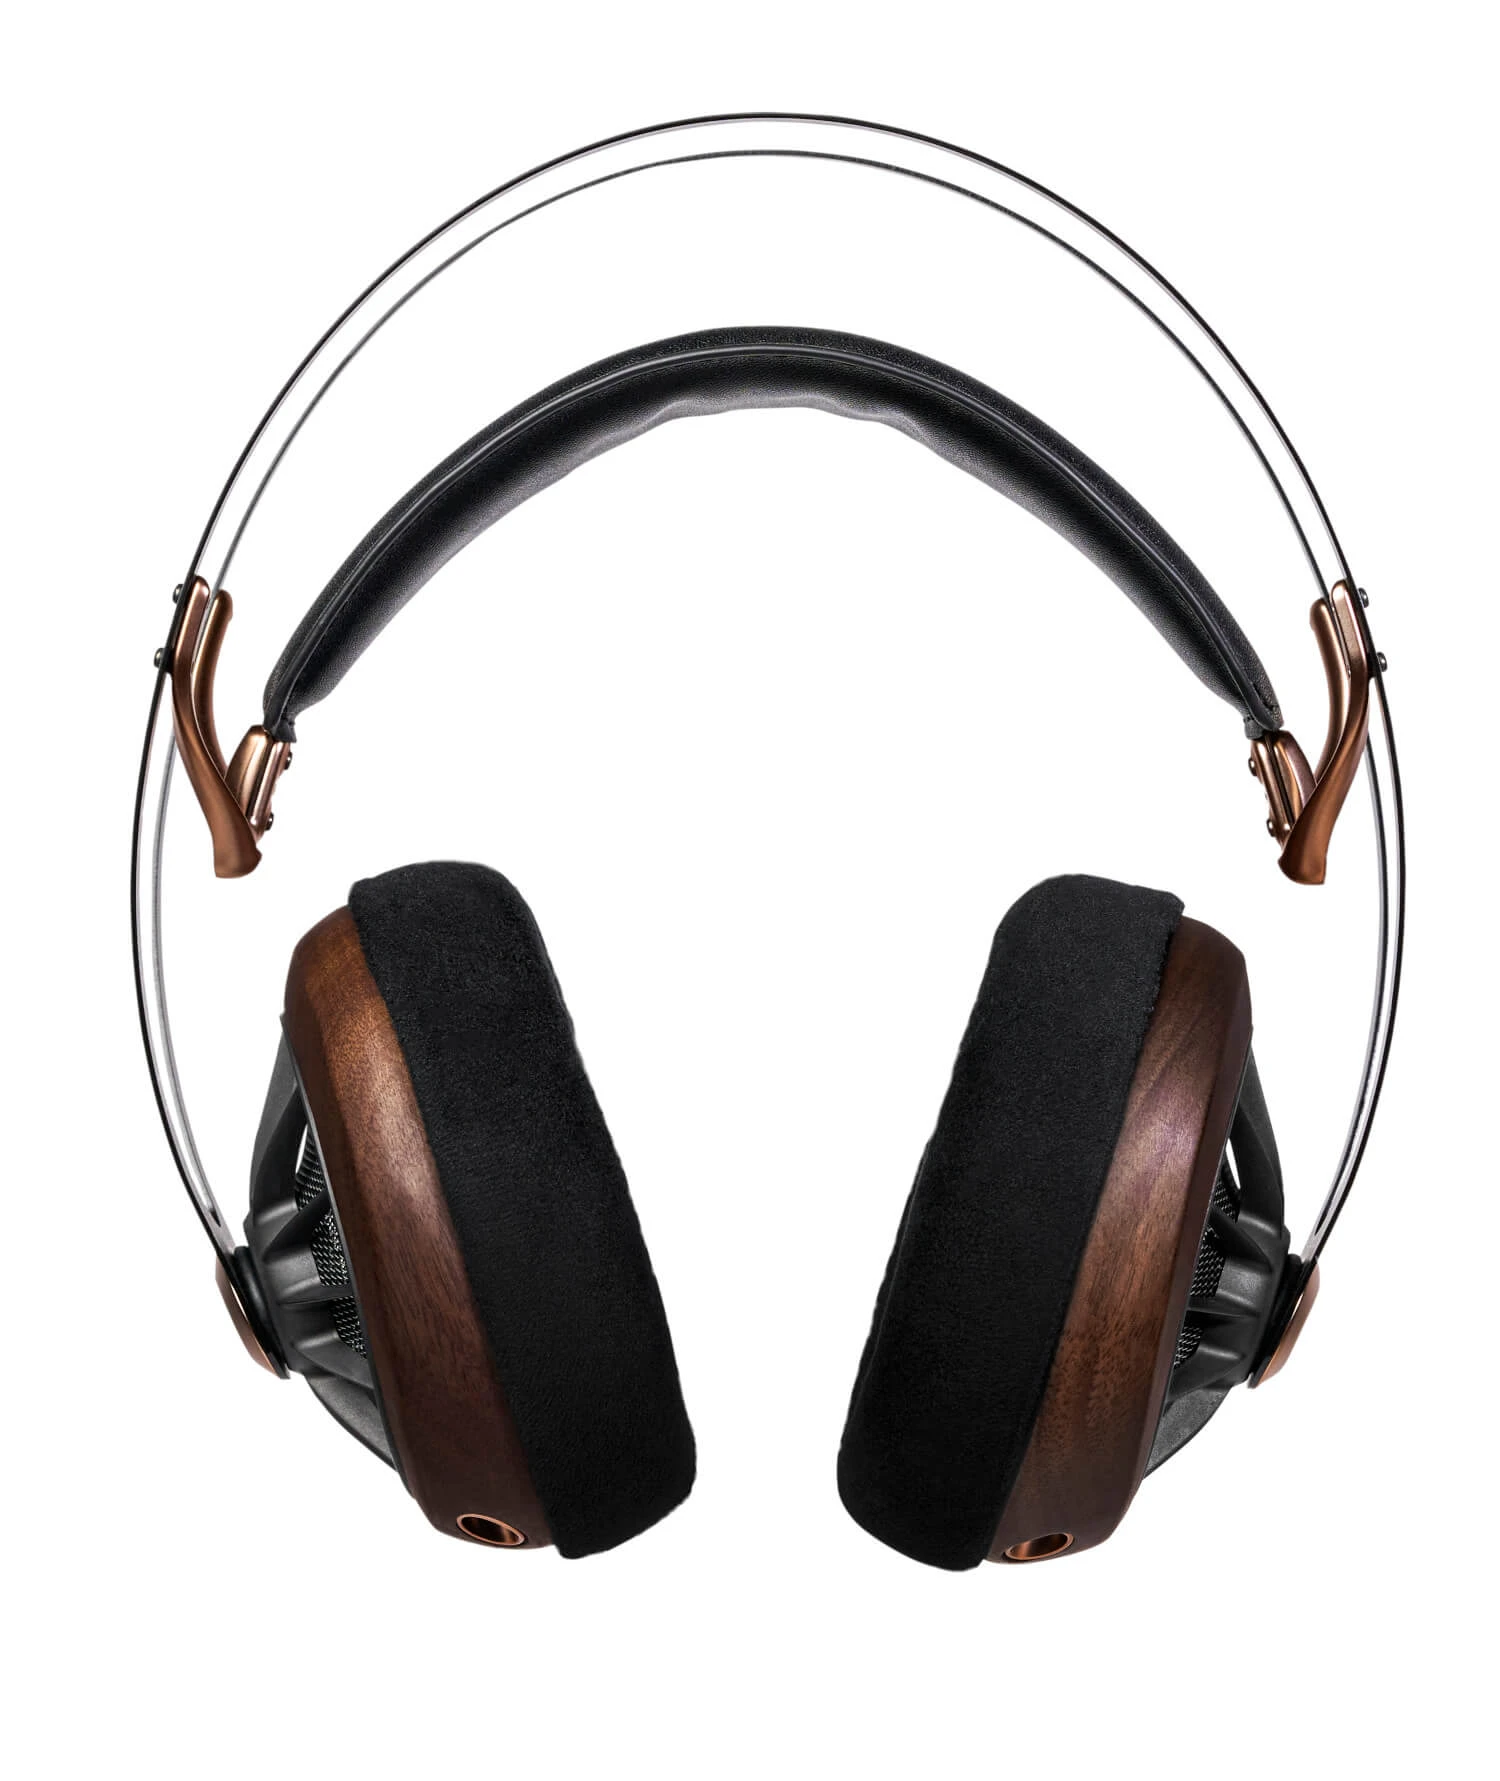 Meze Audio 109 Pro, offener dynamischer Over-Ear Kopfhörer